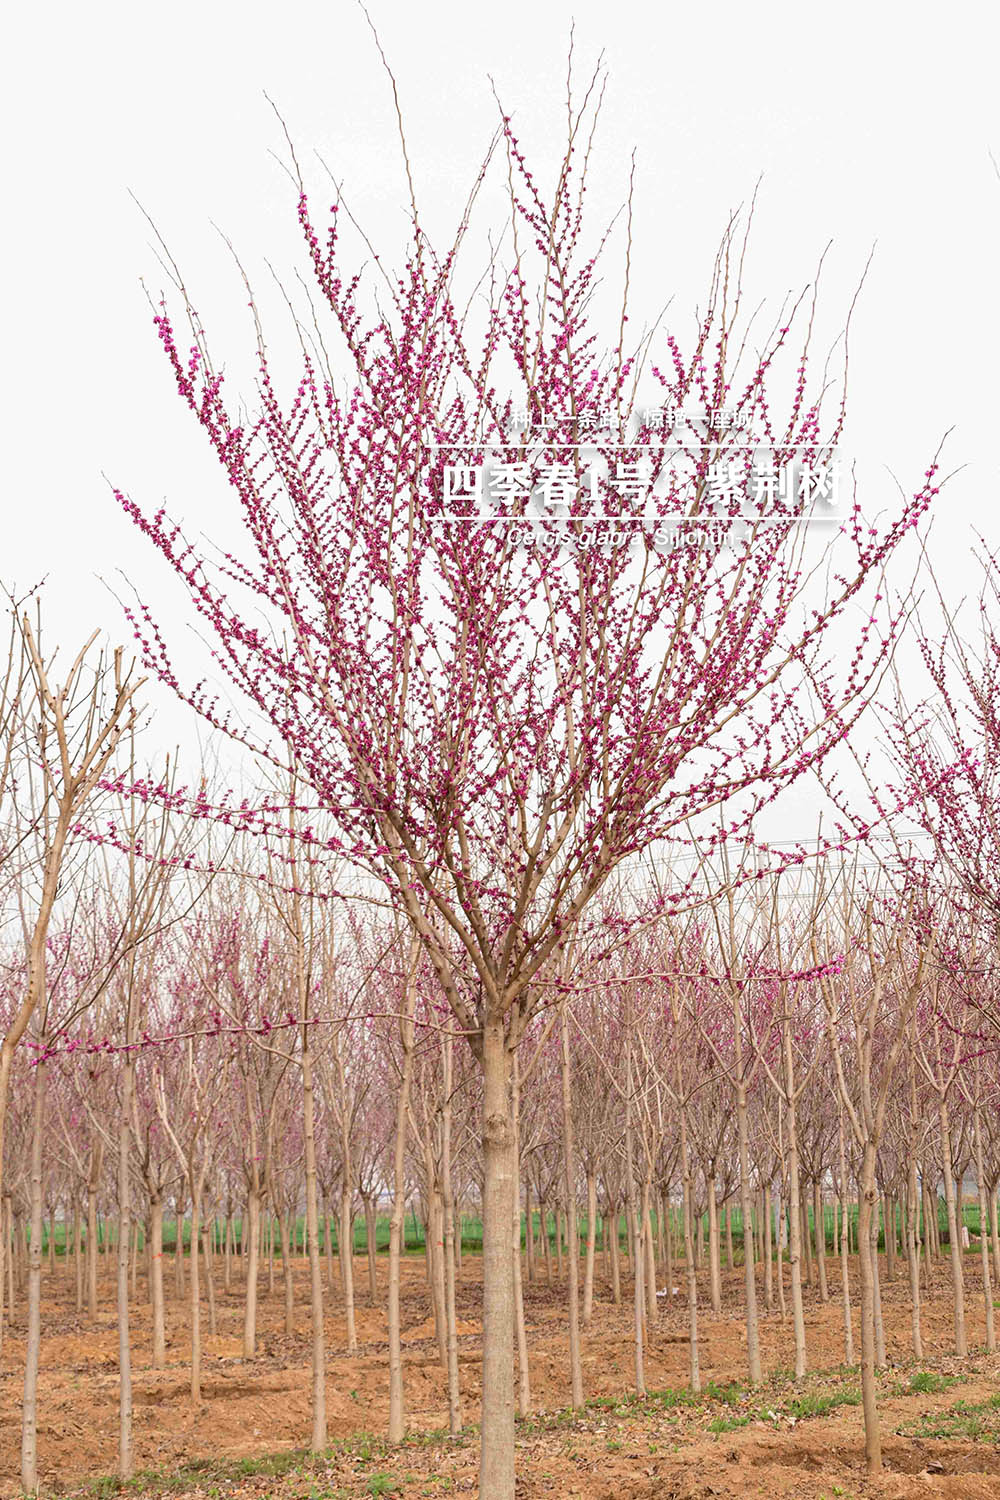 3.17“四季春一号”- 紫荆树